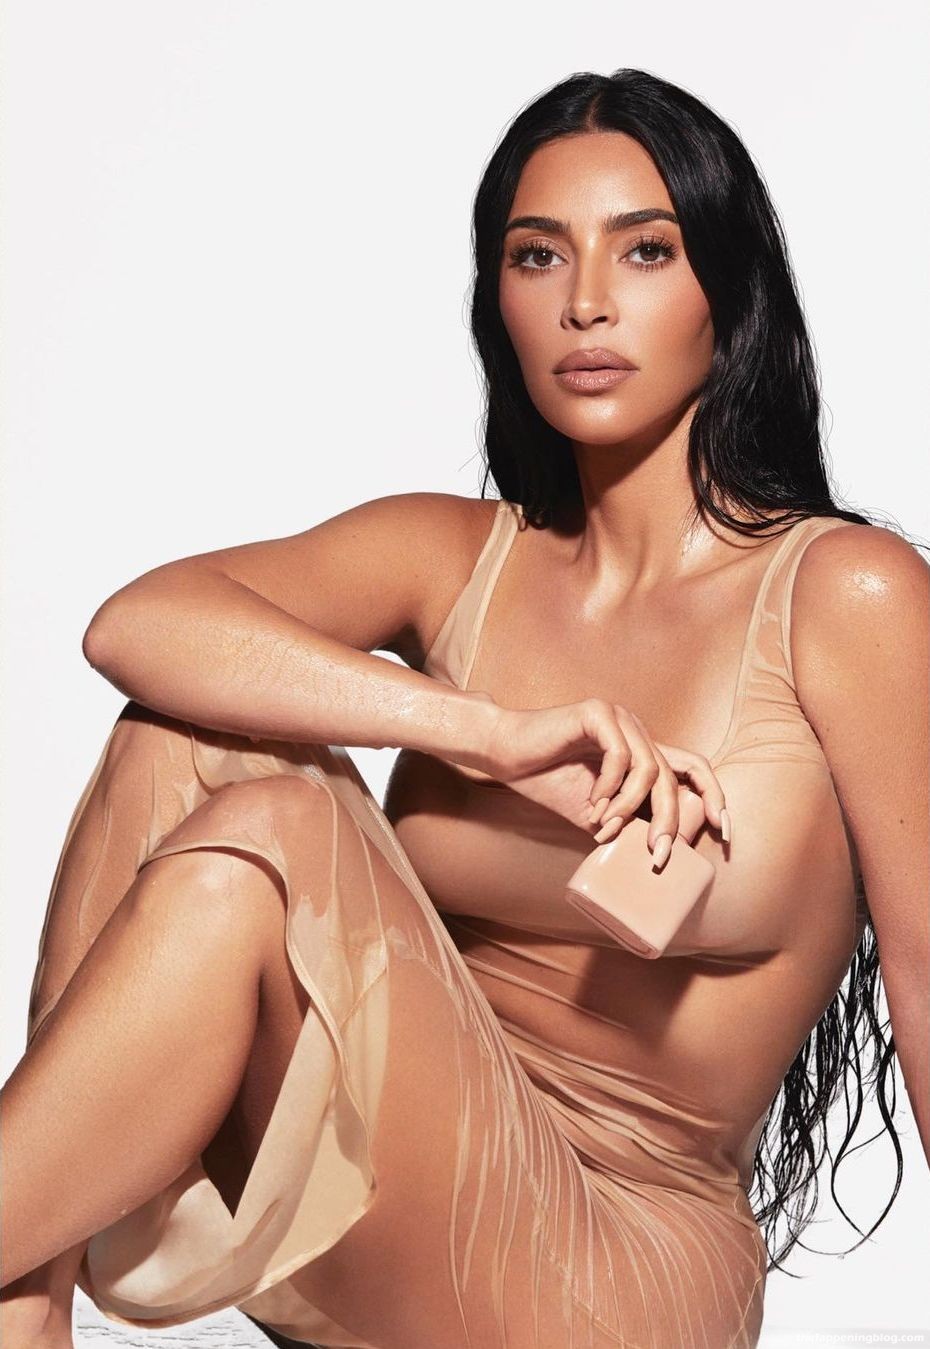 Kim-Kardashian-Hot-1-thefappeningblog.com1_.jpg